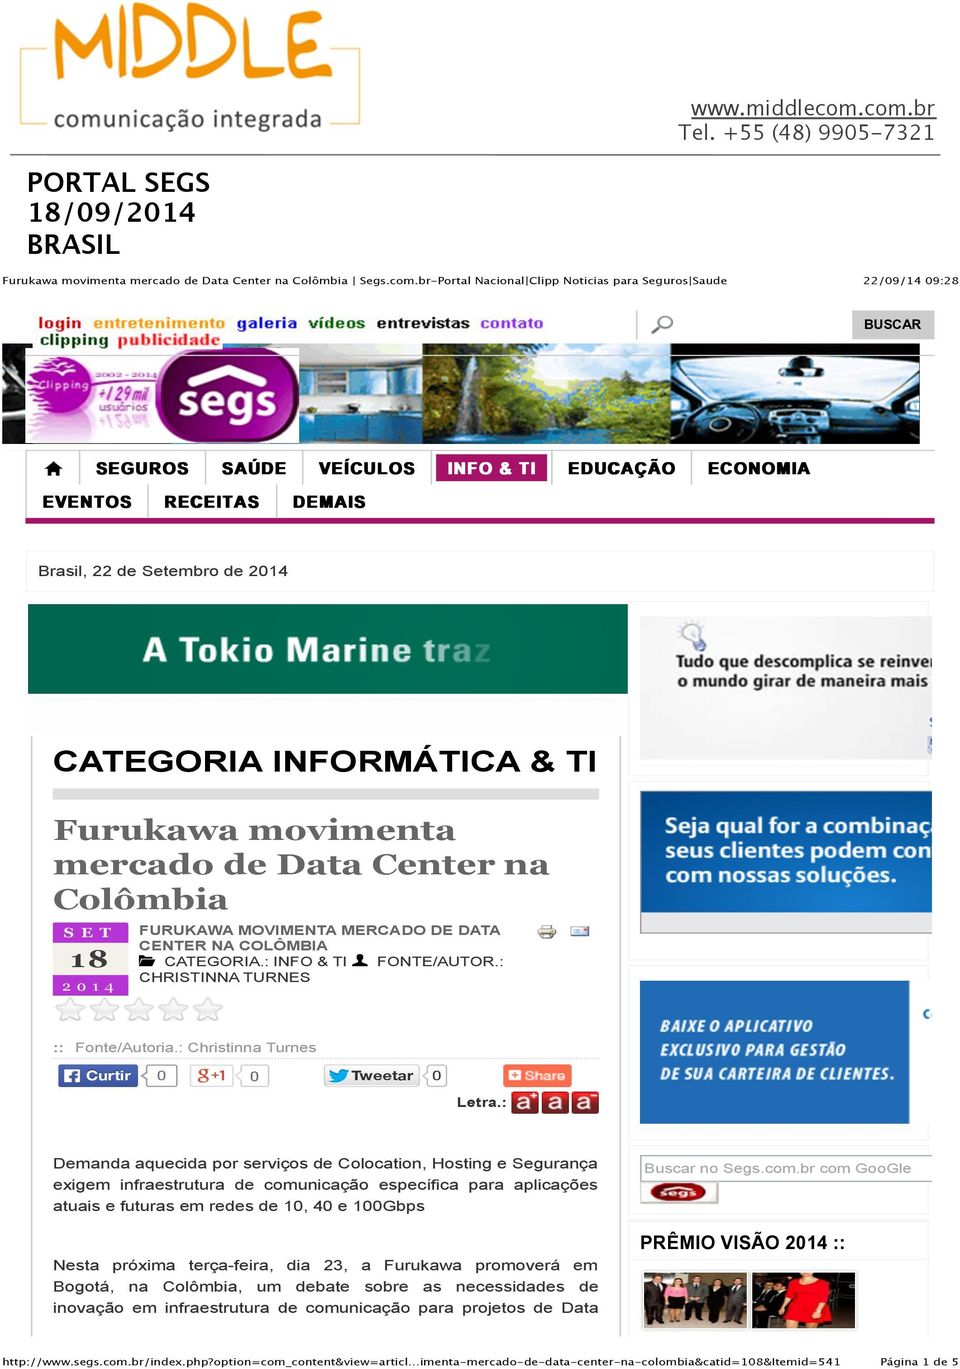 INFORMÁTICA & TI Furukawa movimenta mercado de Data Center na Colômbia SET 18 2014 FURUKAWA MOVIMENTA MERCADO DE DATA CENTER NA COLÔMBIA! CATEGORIA.: INFO & TI " FONTE/AUTOR.